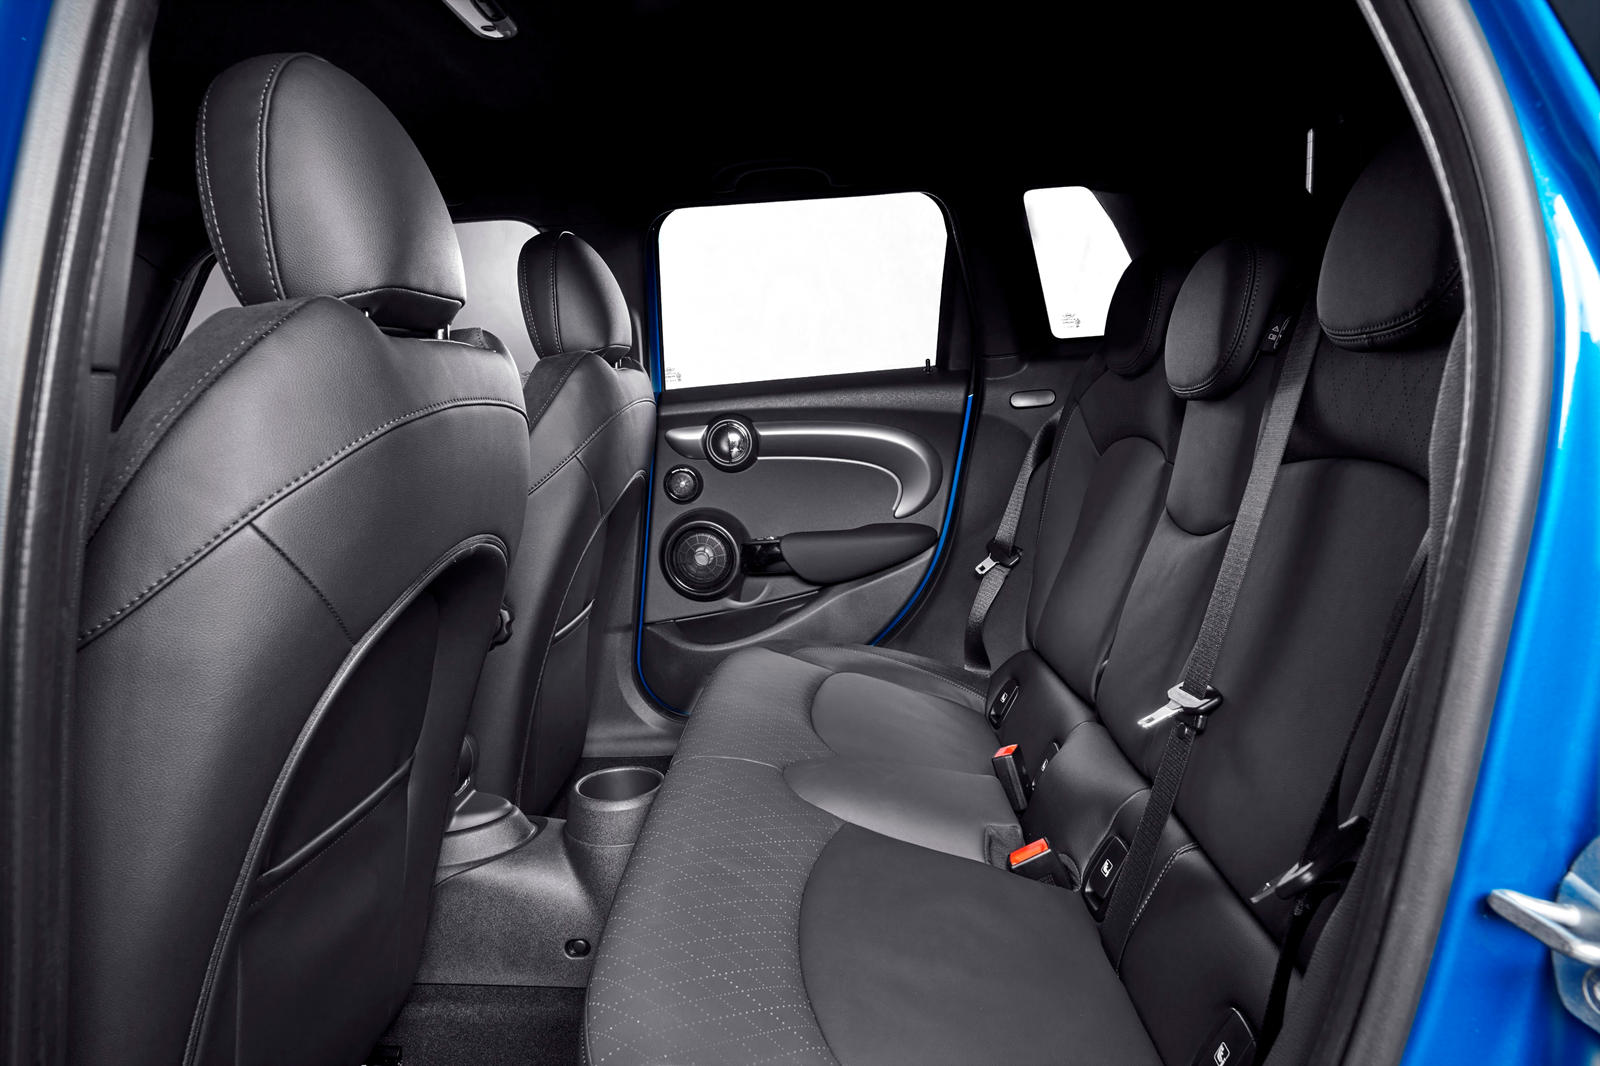 Mini Cooper D interior - Seats